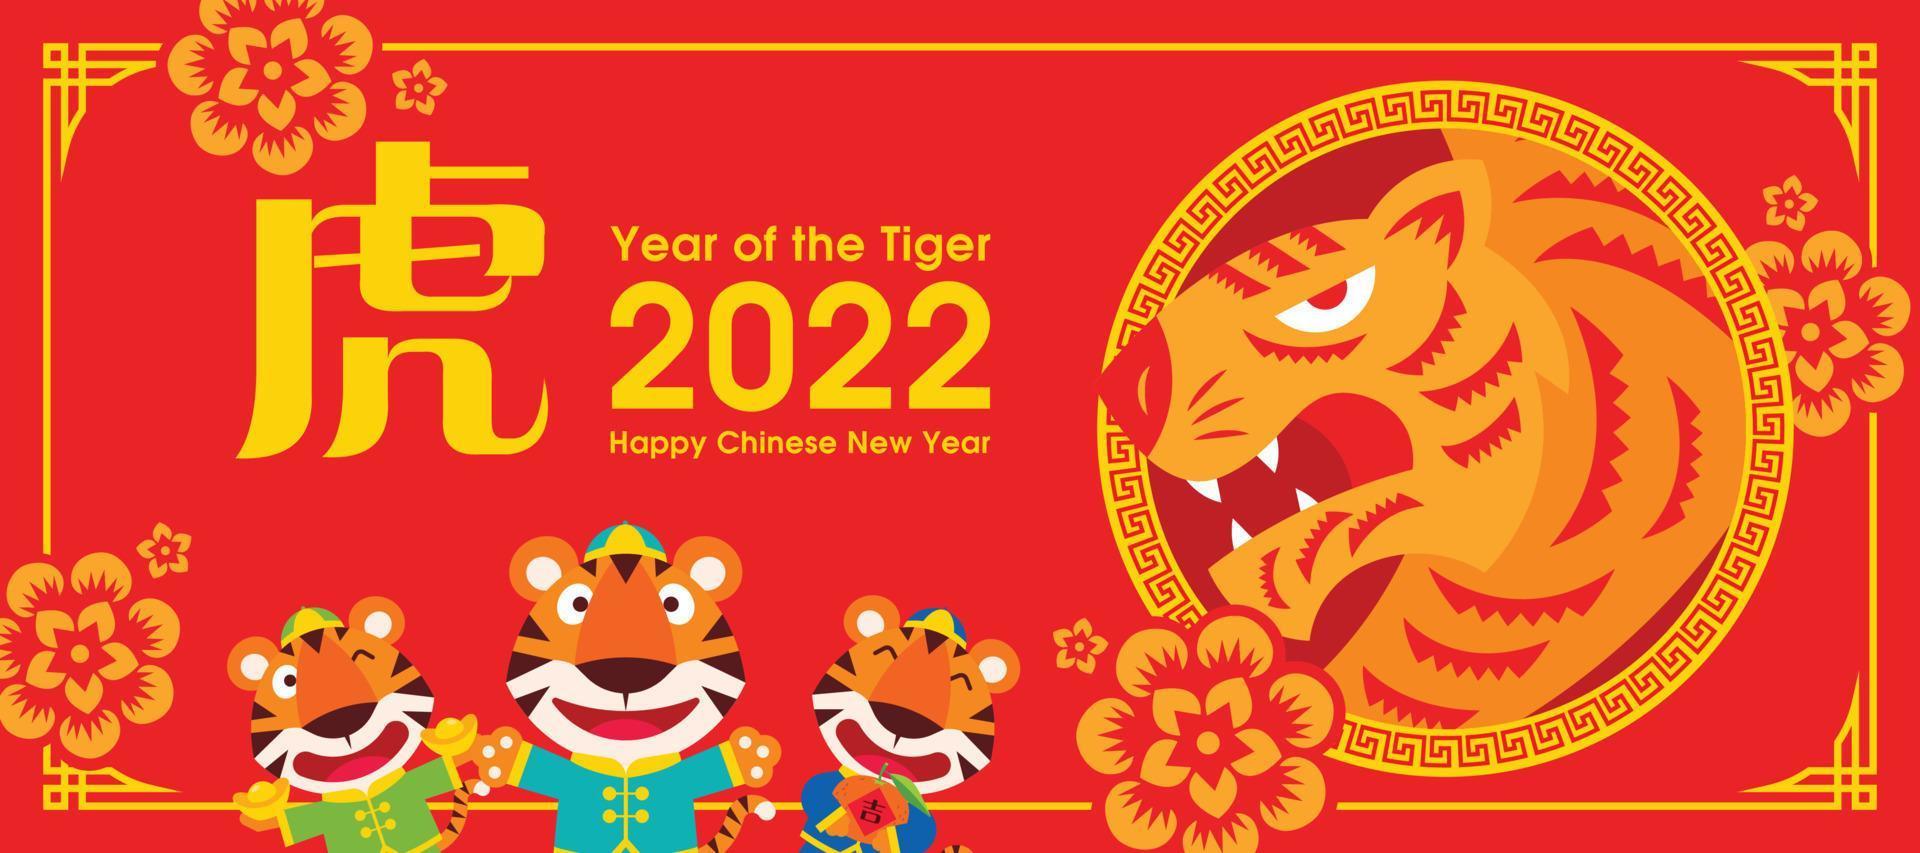 año nuevo chino 2022. año del tigre. Tigre de dibujos animados de diseño plano con corte de papel del símbolo del tigre y adornos florales orientales en la tarjeta de felicitación vector